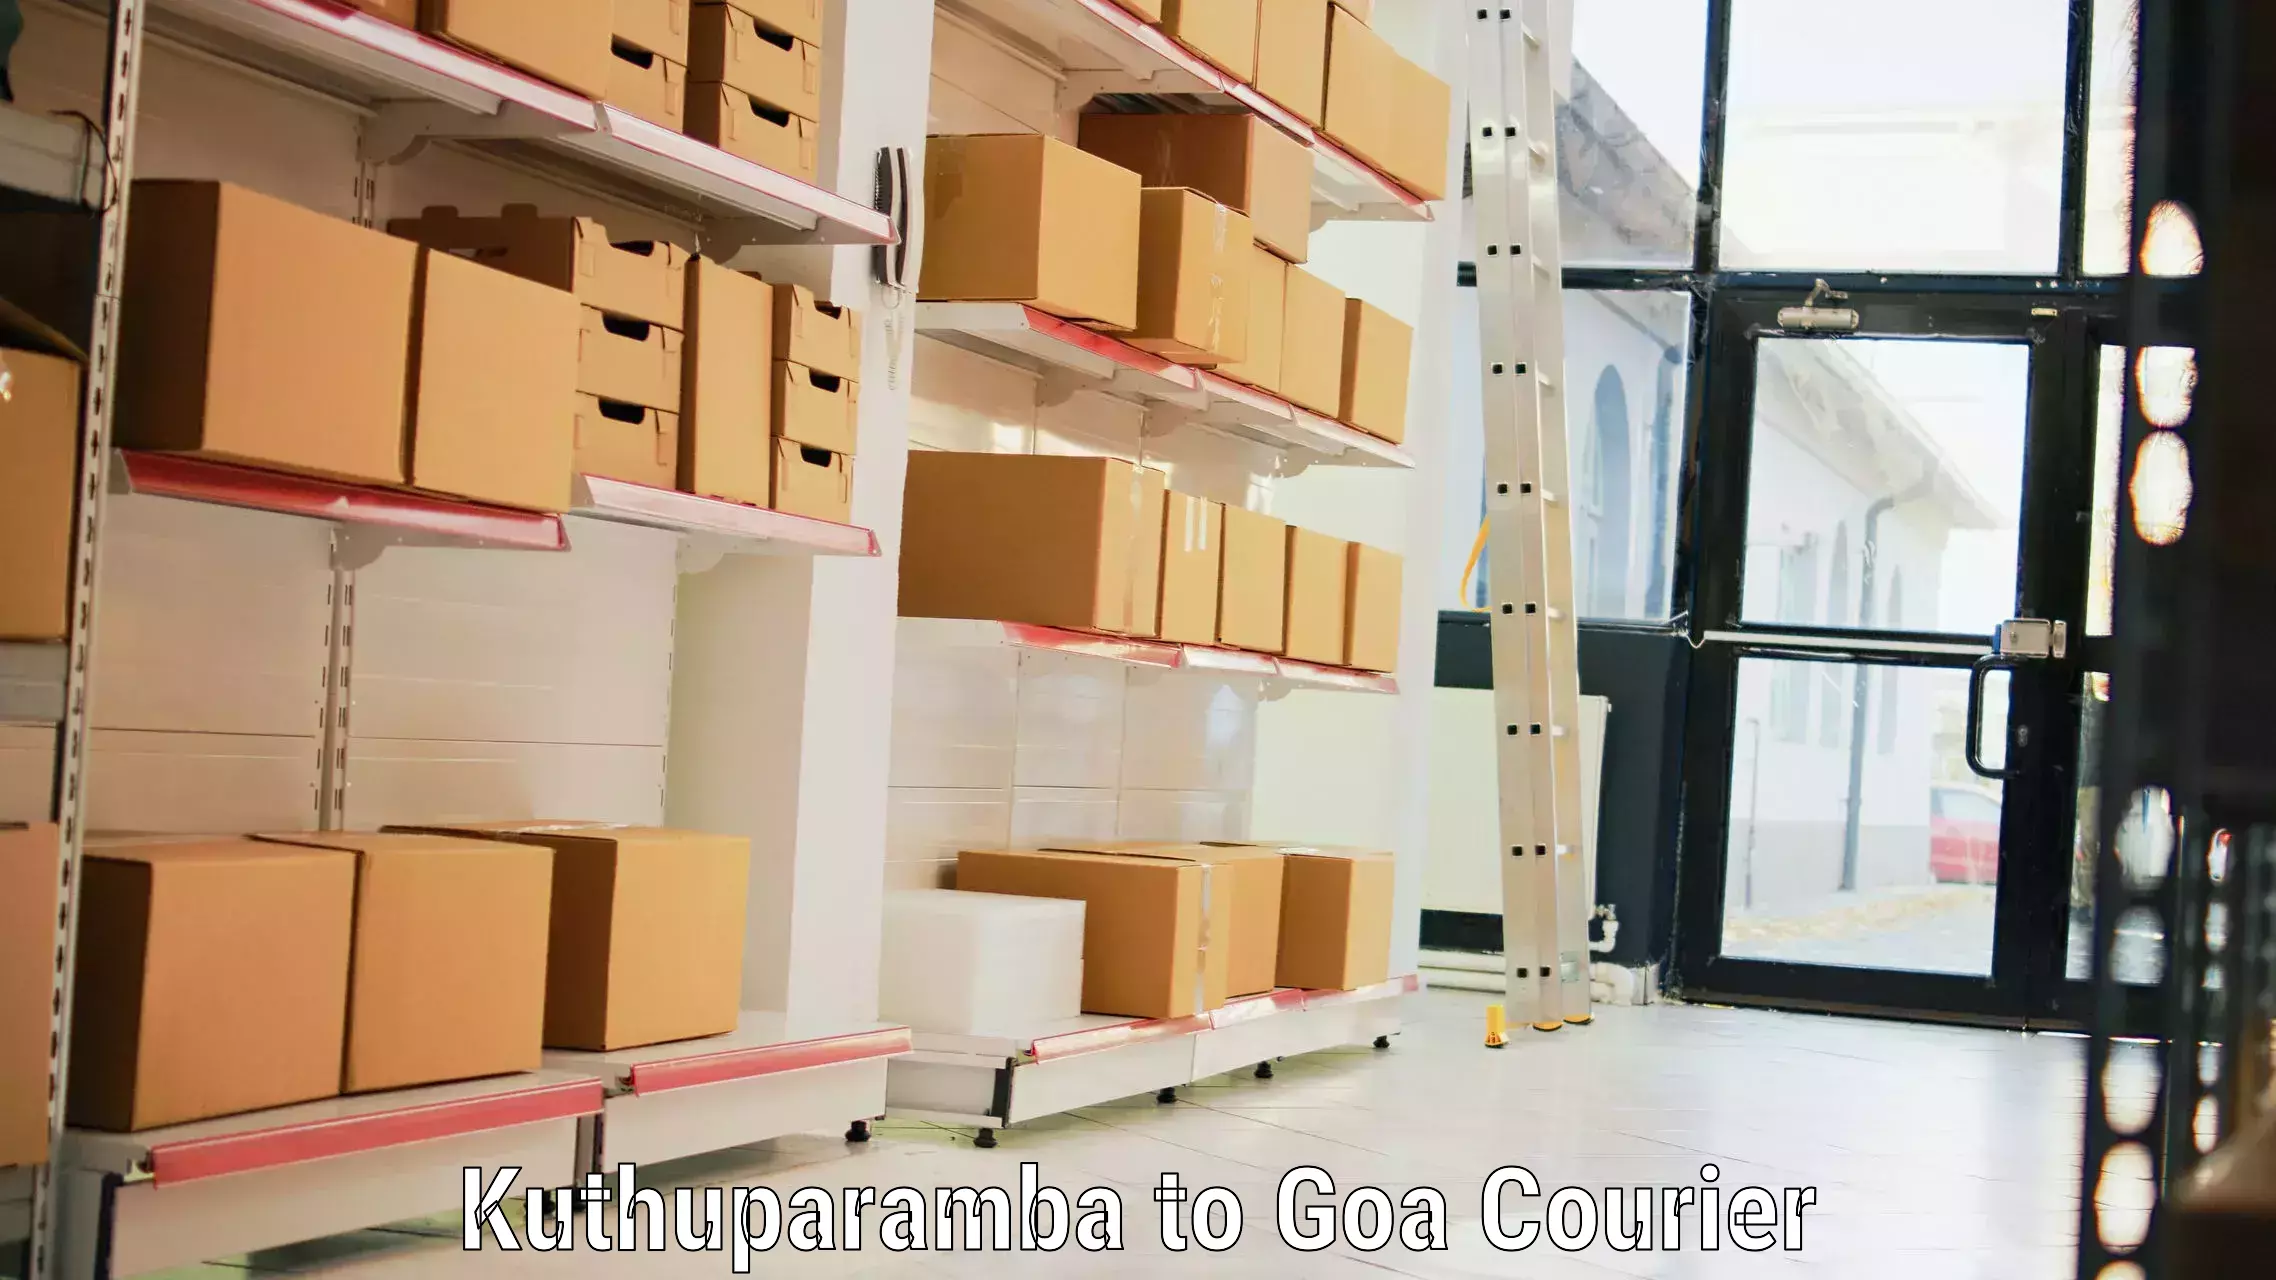 Baggage transport management Kuthuparamba to NIT Goa